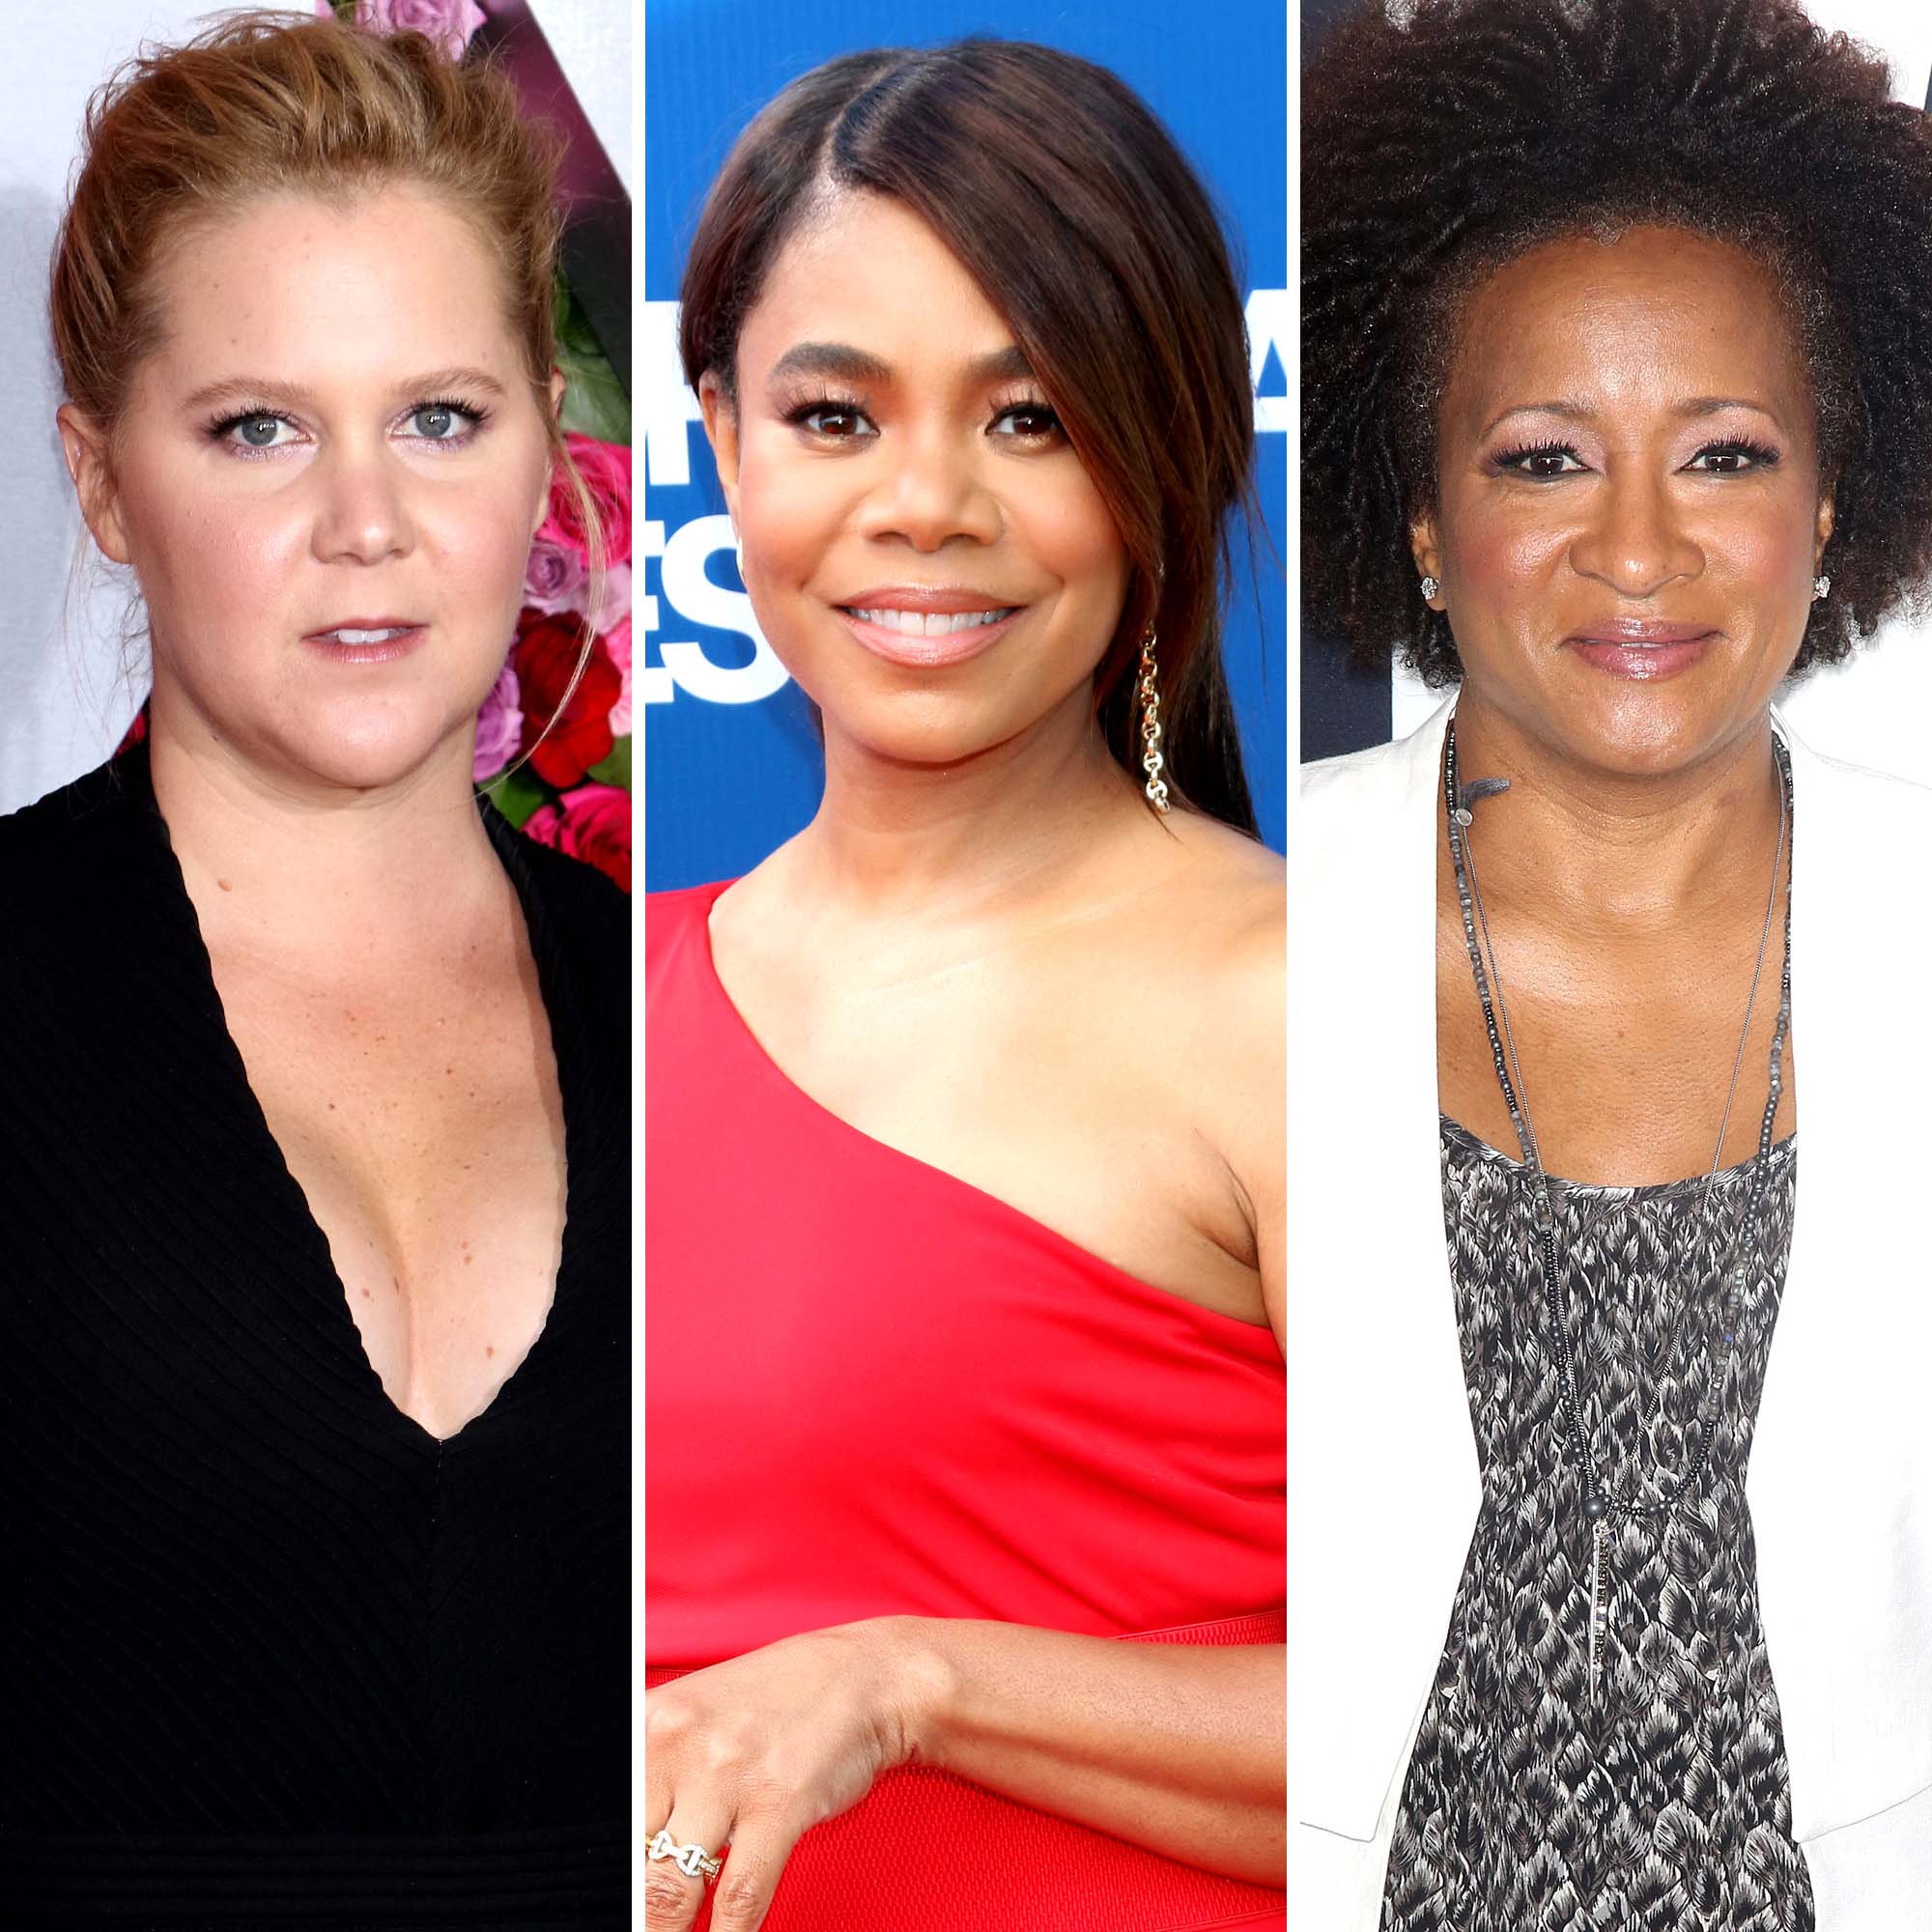 Wanda Sykes, Amy Schumer and Regina Hall to host 2022 Oscars - ABC News